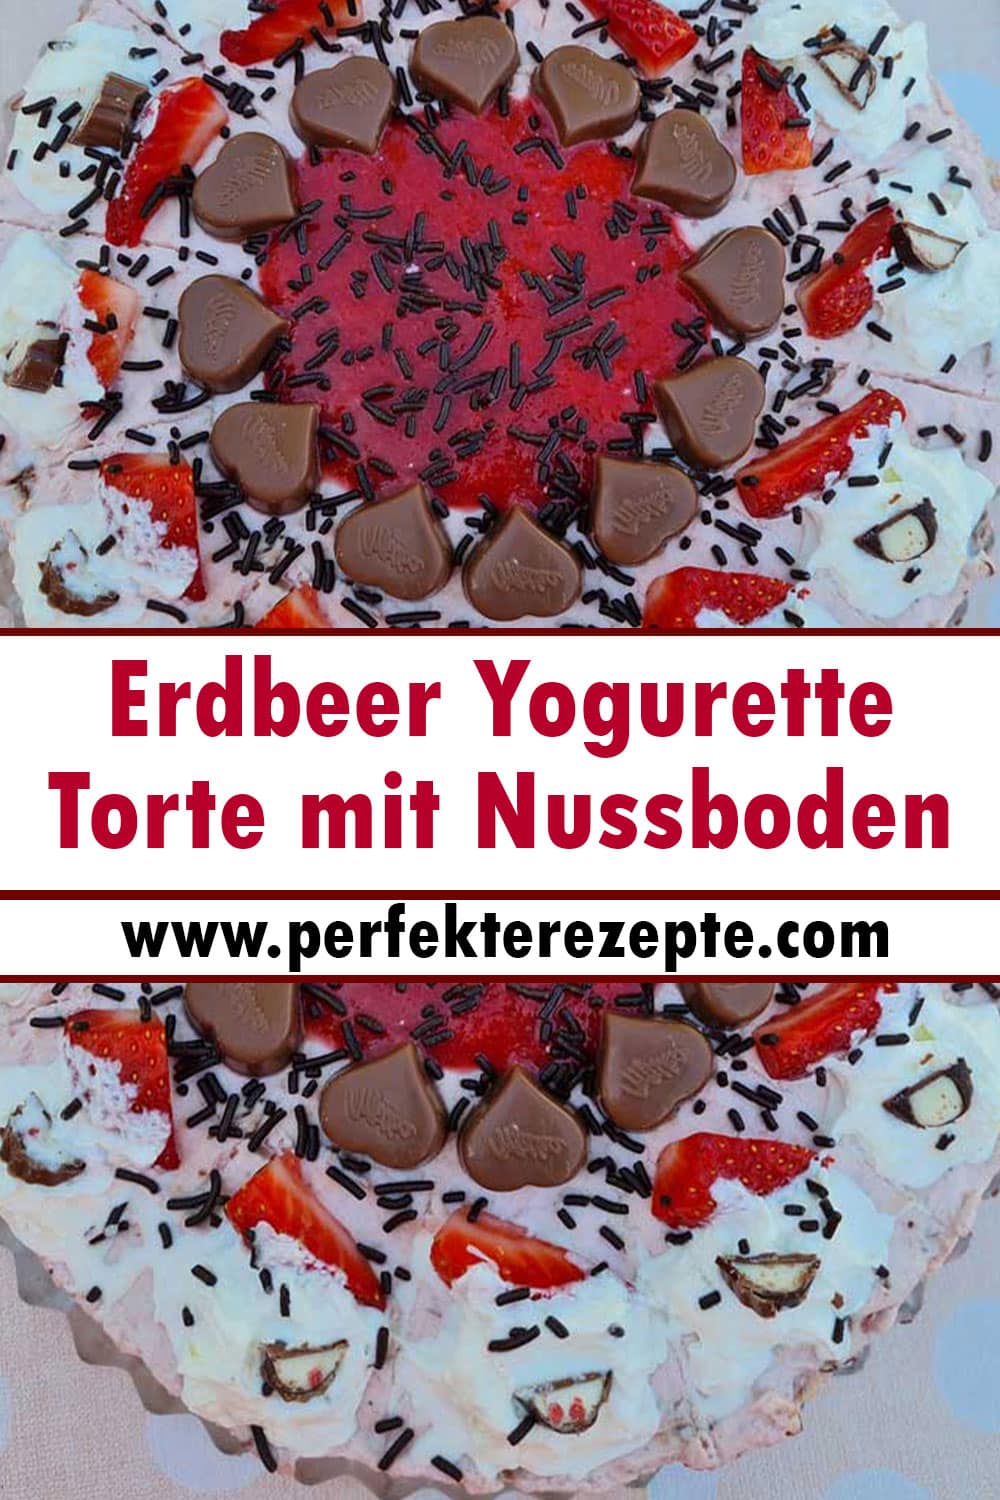 Erdbeer Yogurette Torte mit Nussboden Rezept